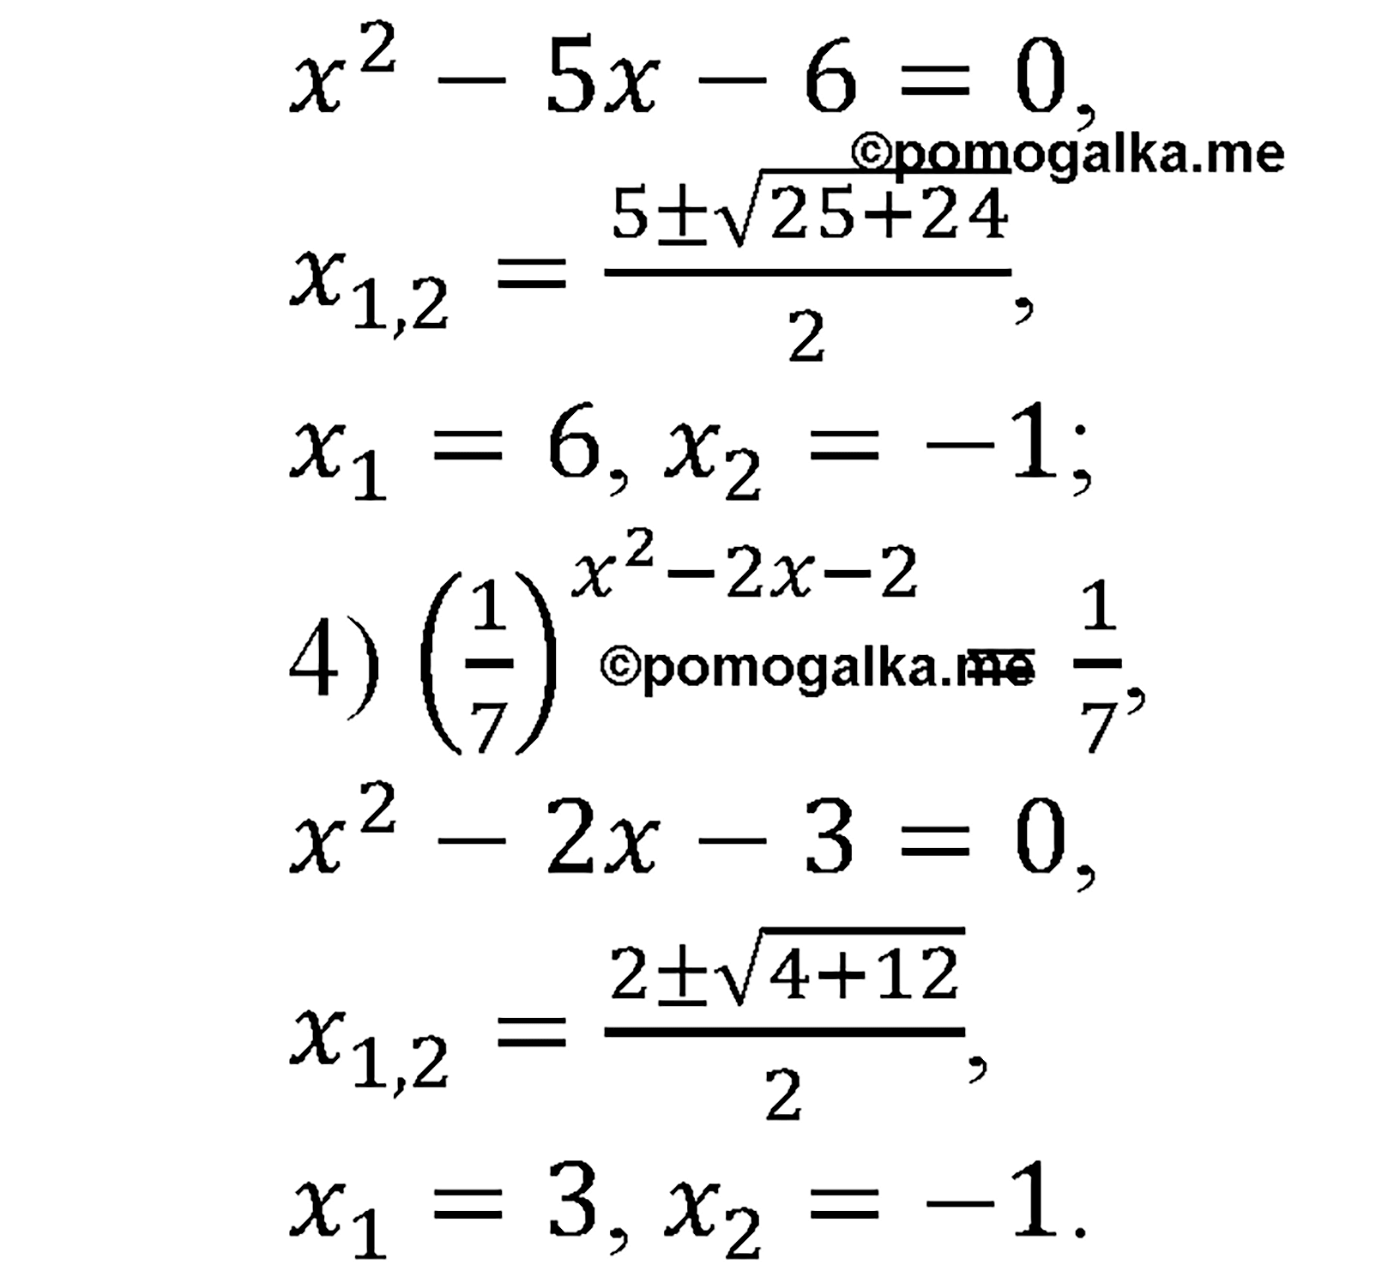 разбор задачи №250 по алгебре за 10-11 класс из учебника Алимова, Колягина